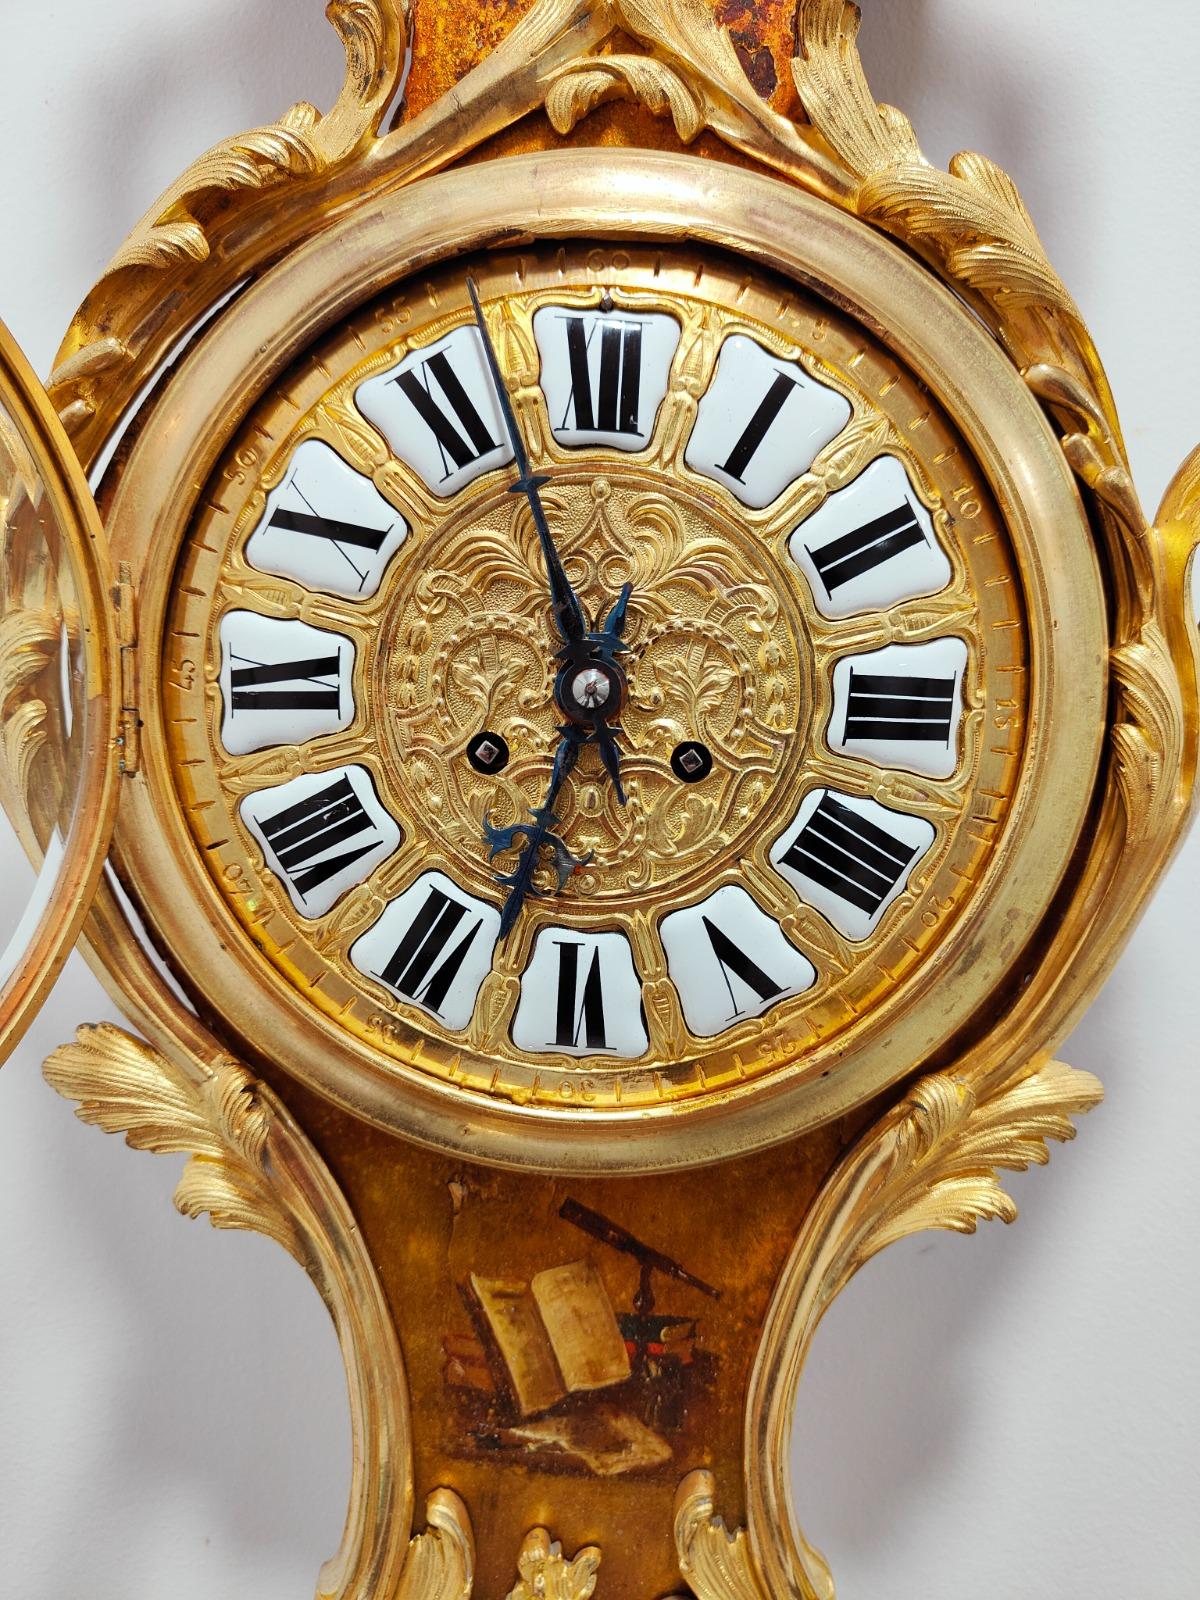 Cartel de style Louis XV Vernis martin Horloge et thermomètre, vers 1740
Un très beau et palatial  Pendule à cartel de style Louis XV du XVIIIe siècle, vernis Martin et bronze doré.  Surmonté d'ornements en bronze doré représentant des rinceaux, des